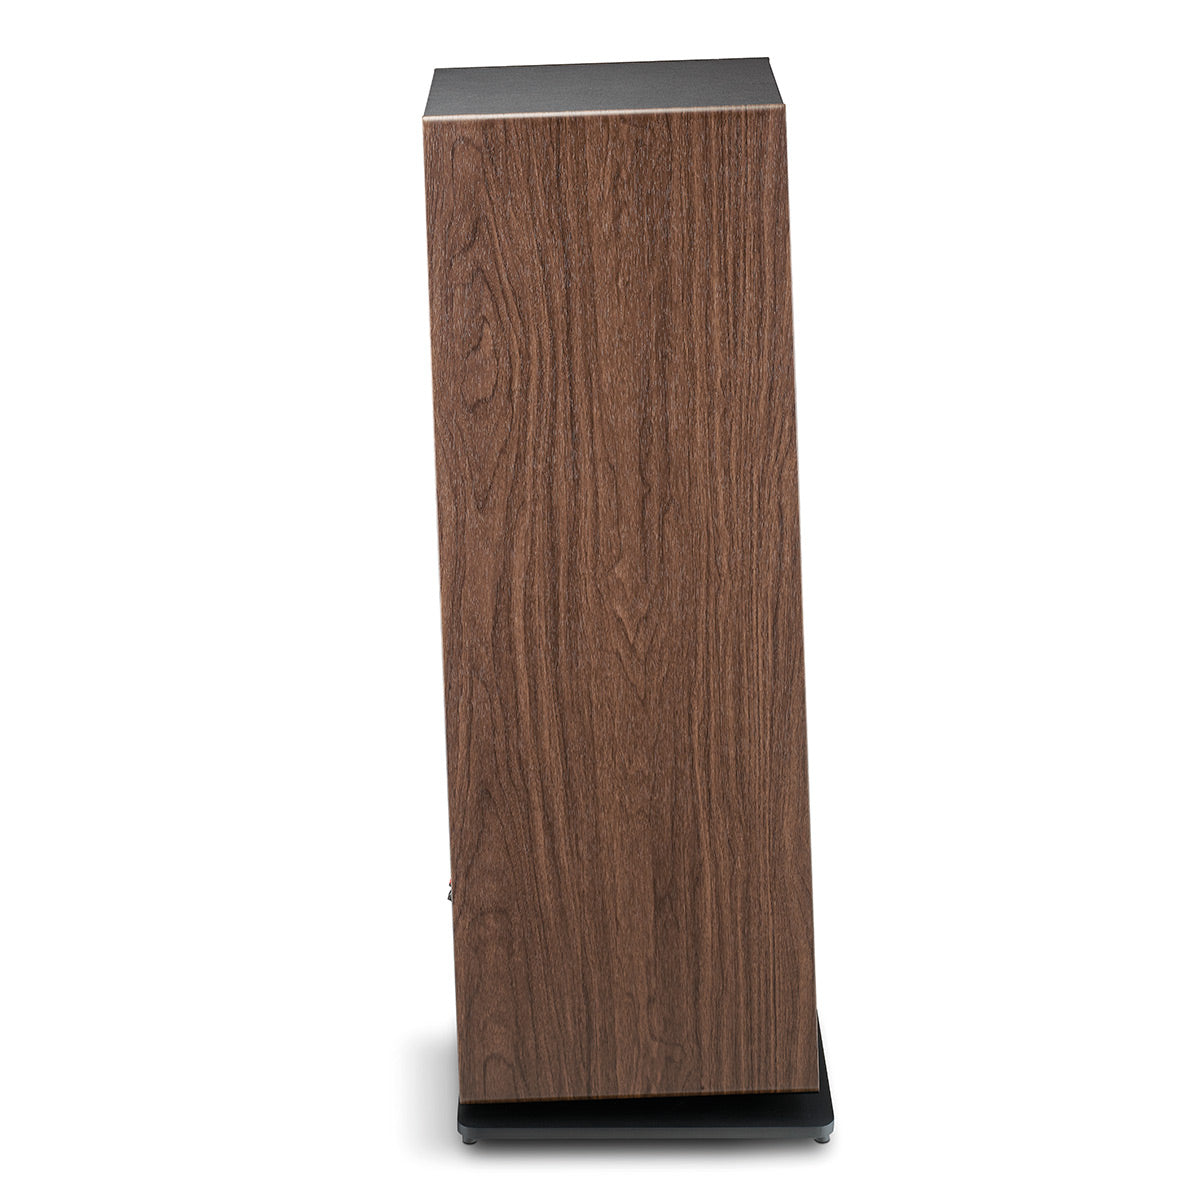 Focal Vestia No.4 Bass-Reflex 3-Way Floorstanding Loudspeaker - Each (Dark Wood)